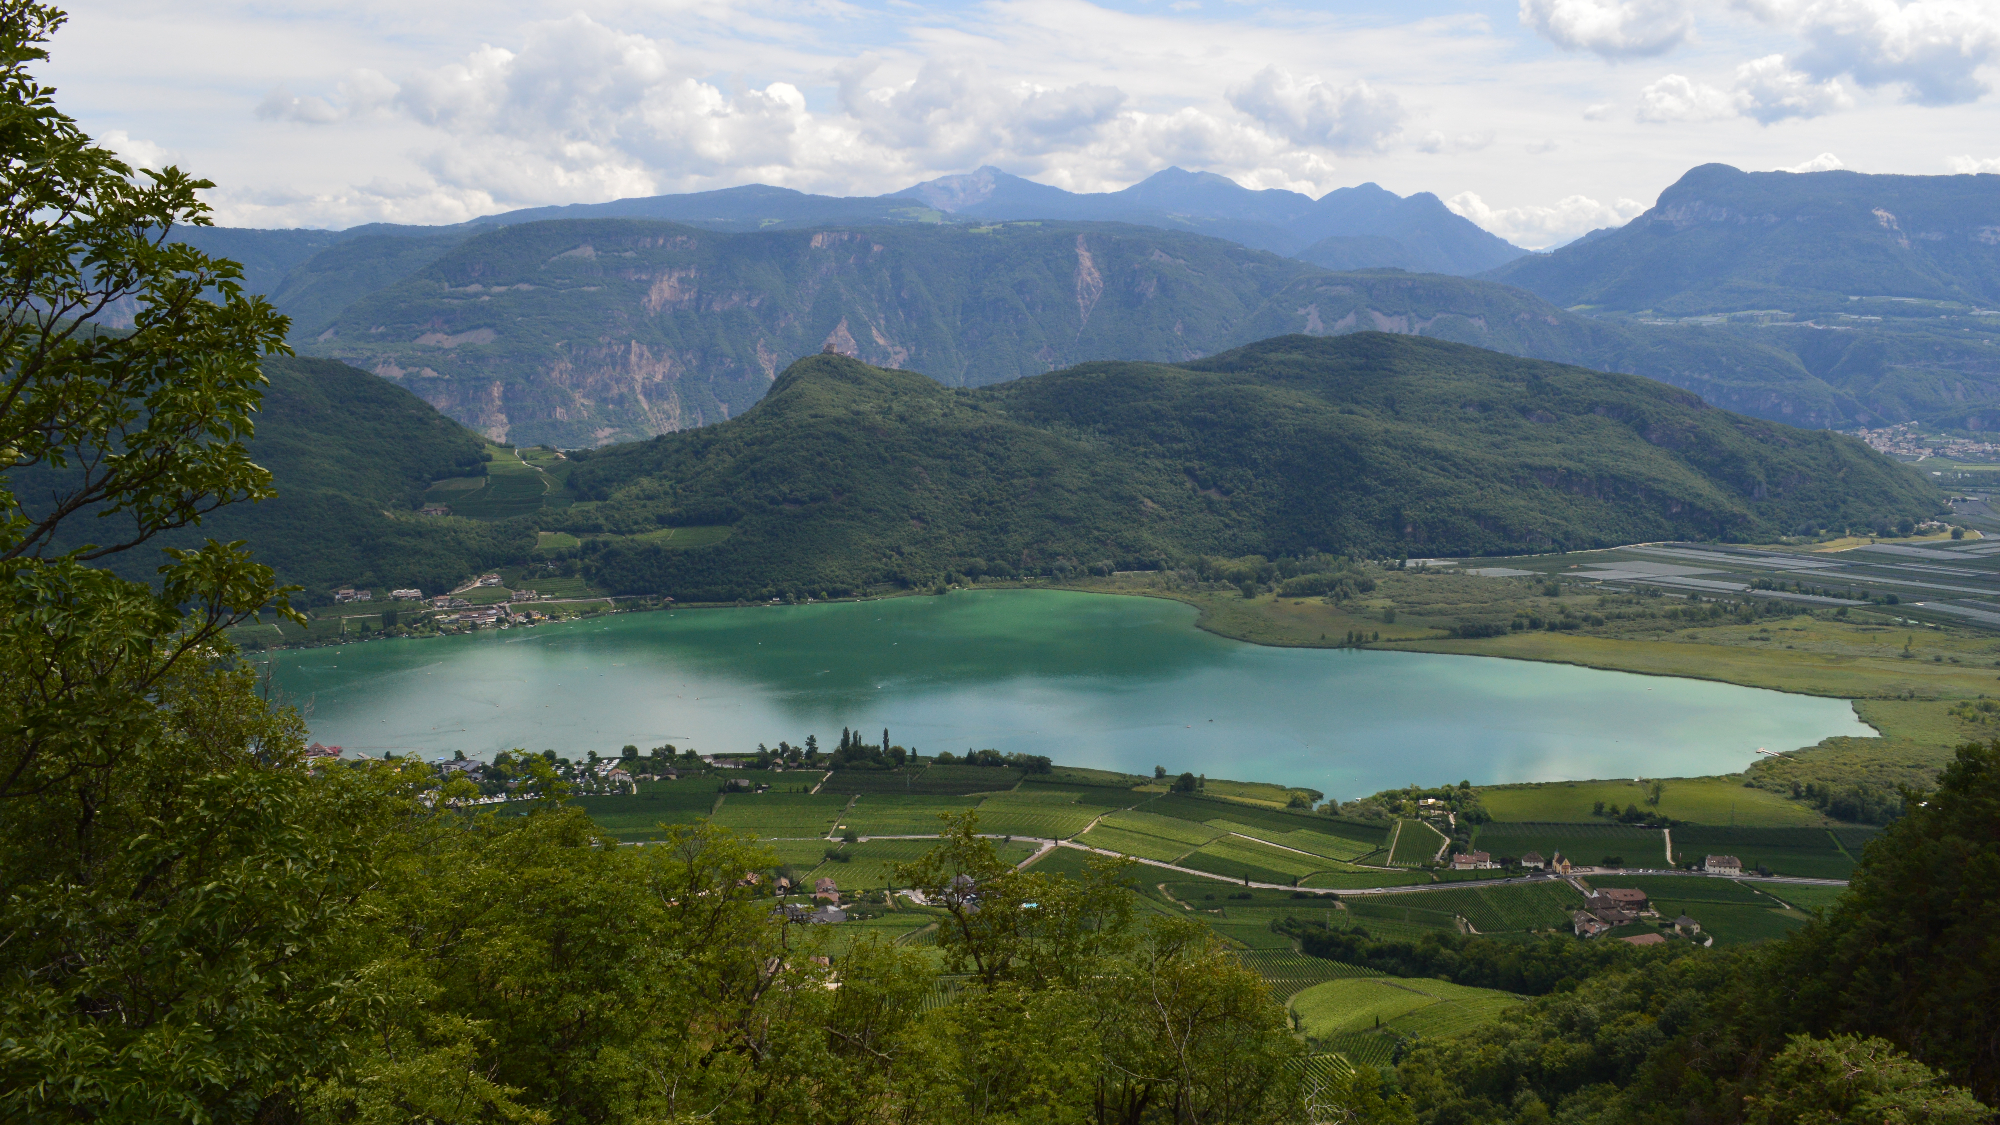 Panoramafoto: Der Kalterer See von einer erhöhten Position aufgenommen. Vor dem See Felder, einige Gebäude sowie eine Straße; hinter dem See weitere Felder sowie bewaldete Berge